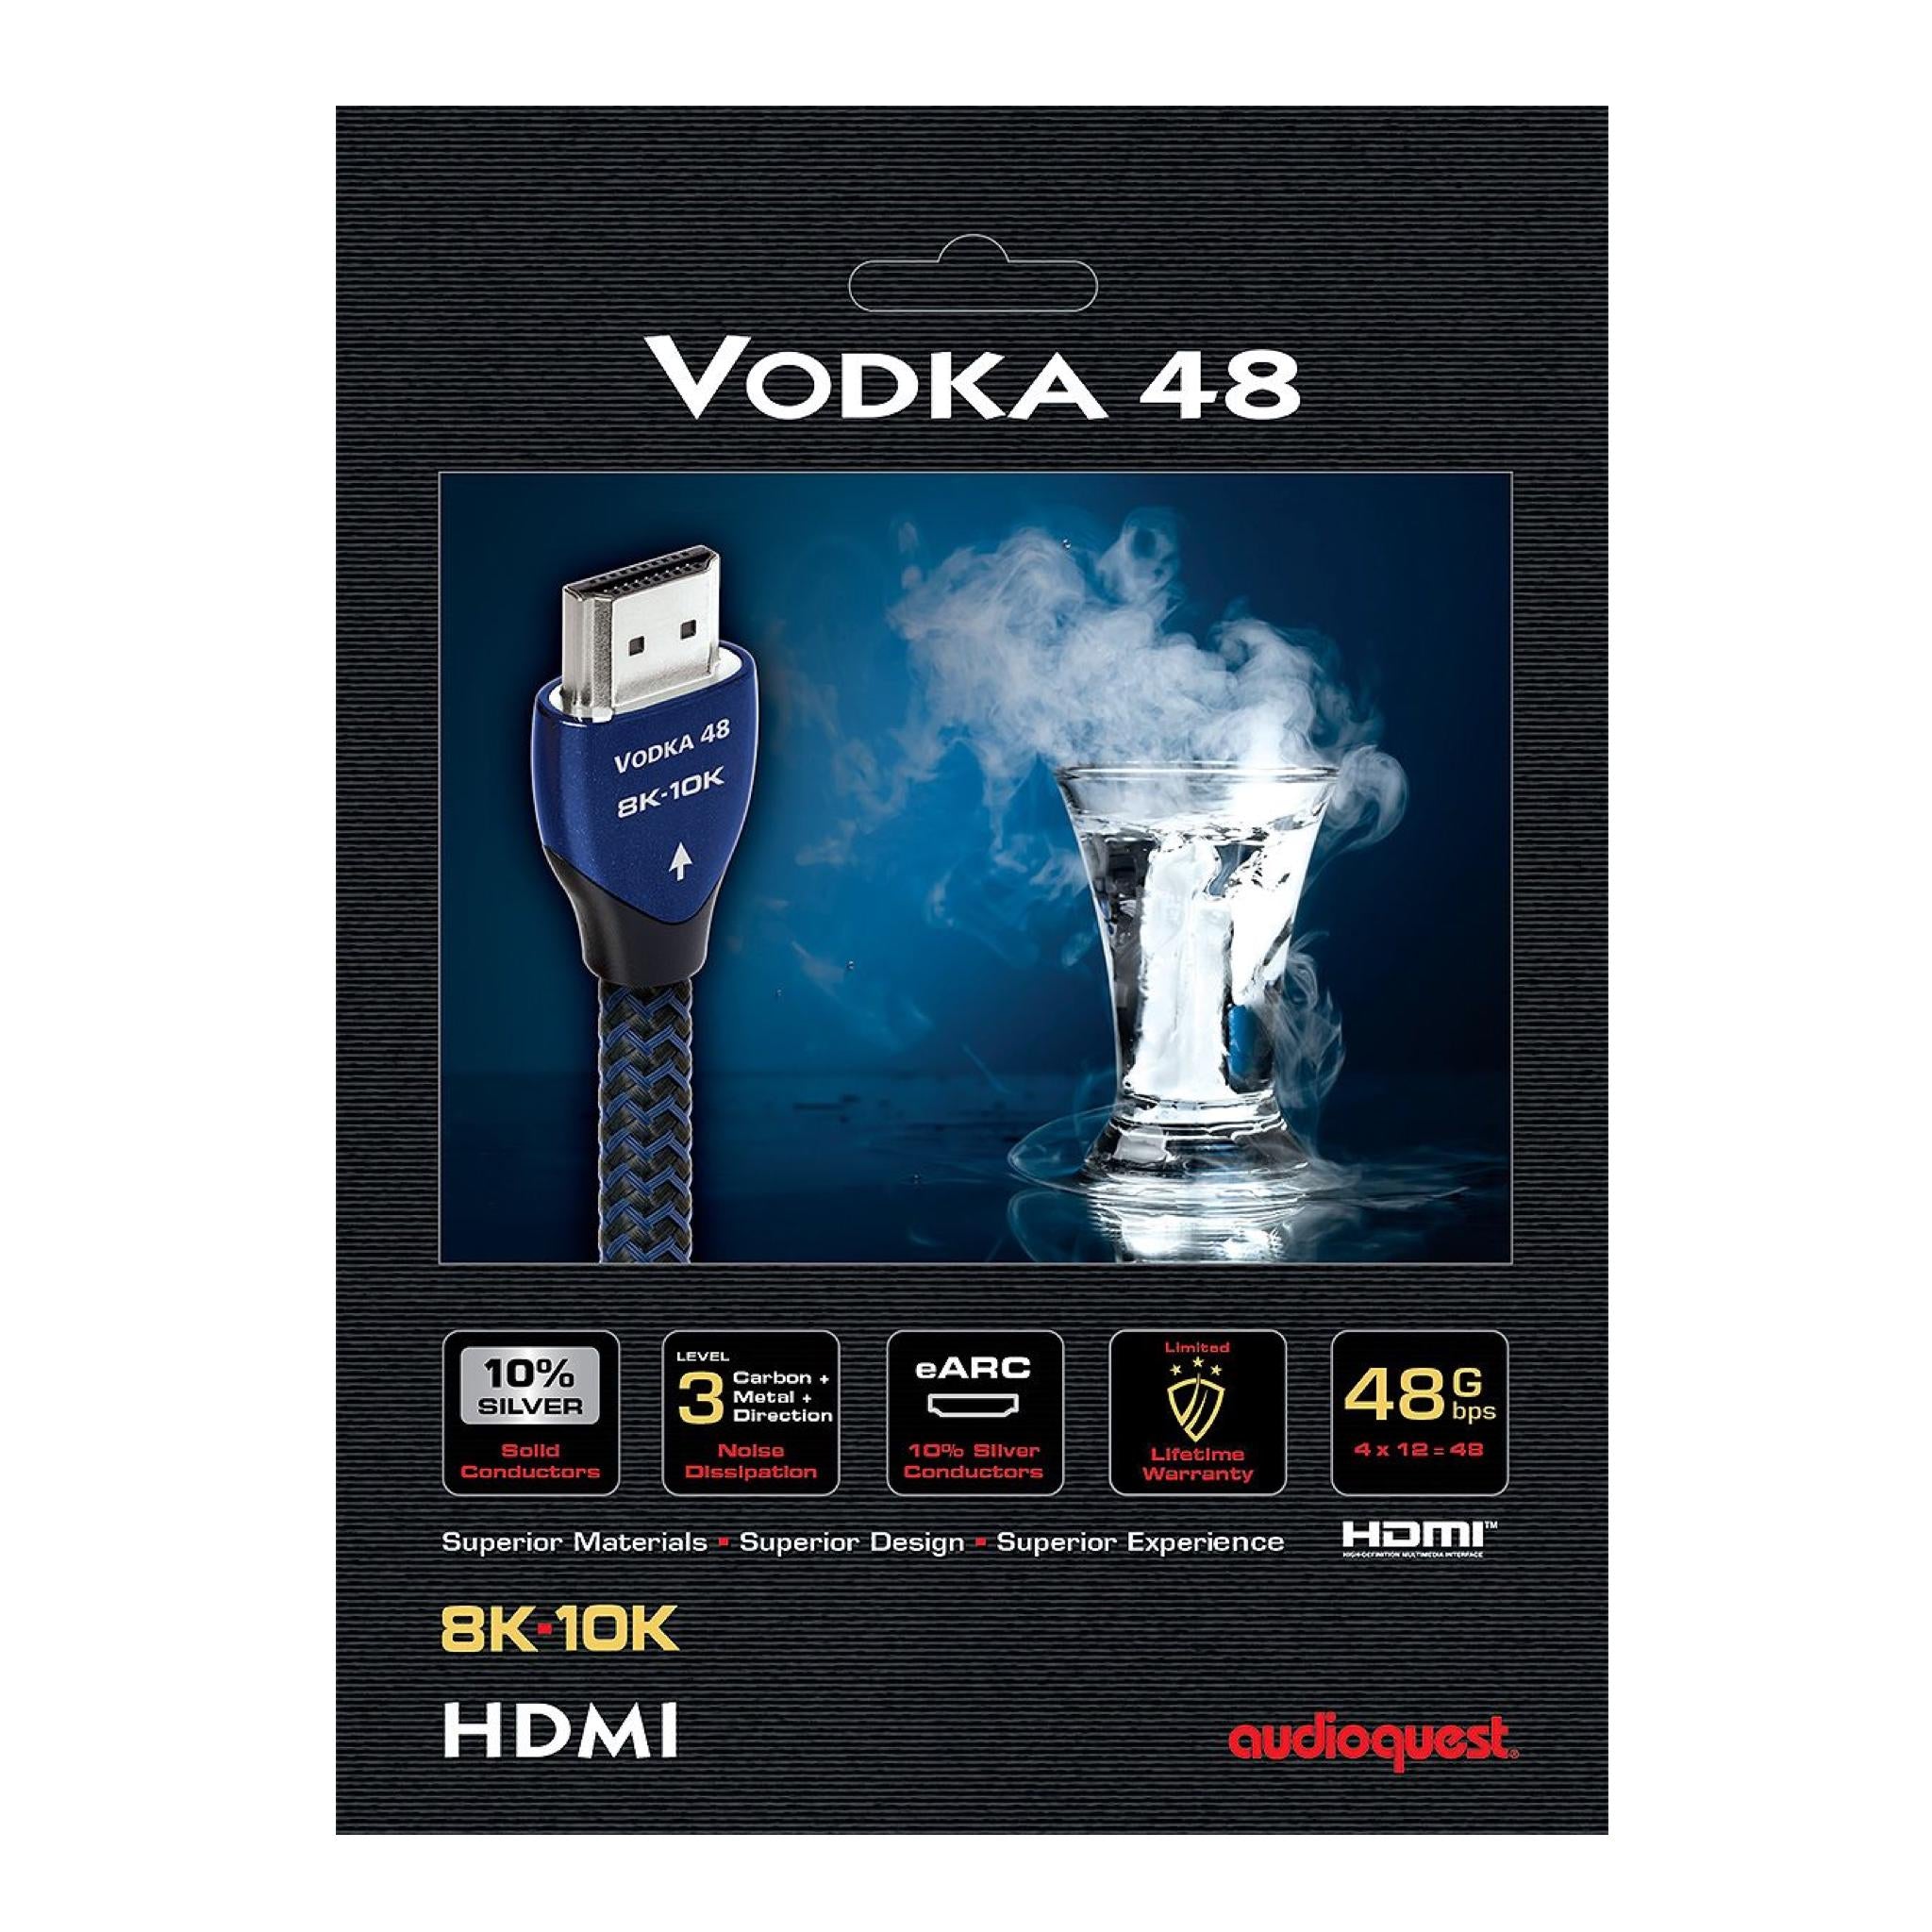 AudioQuest 8K HDMI Cable - Vodka 48 - AVStore